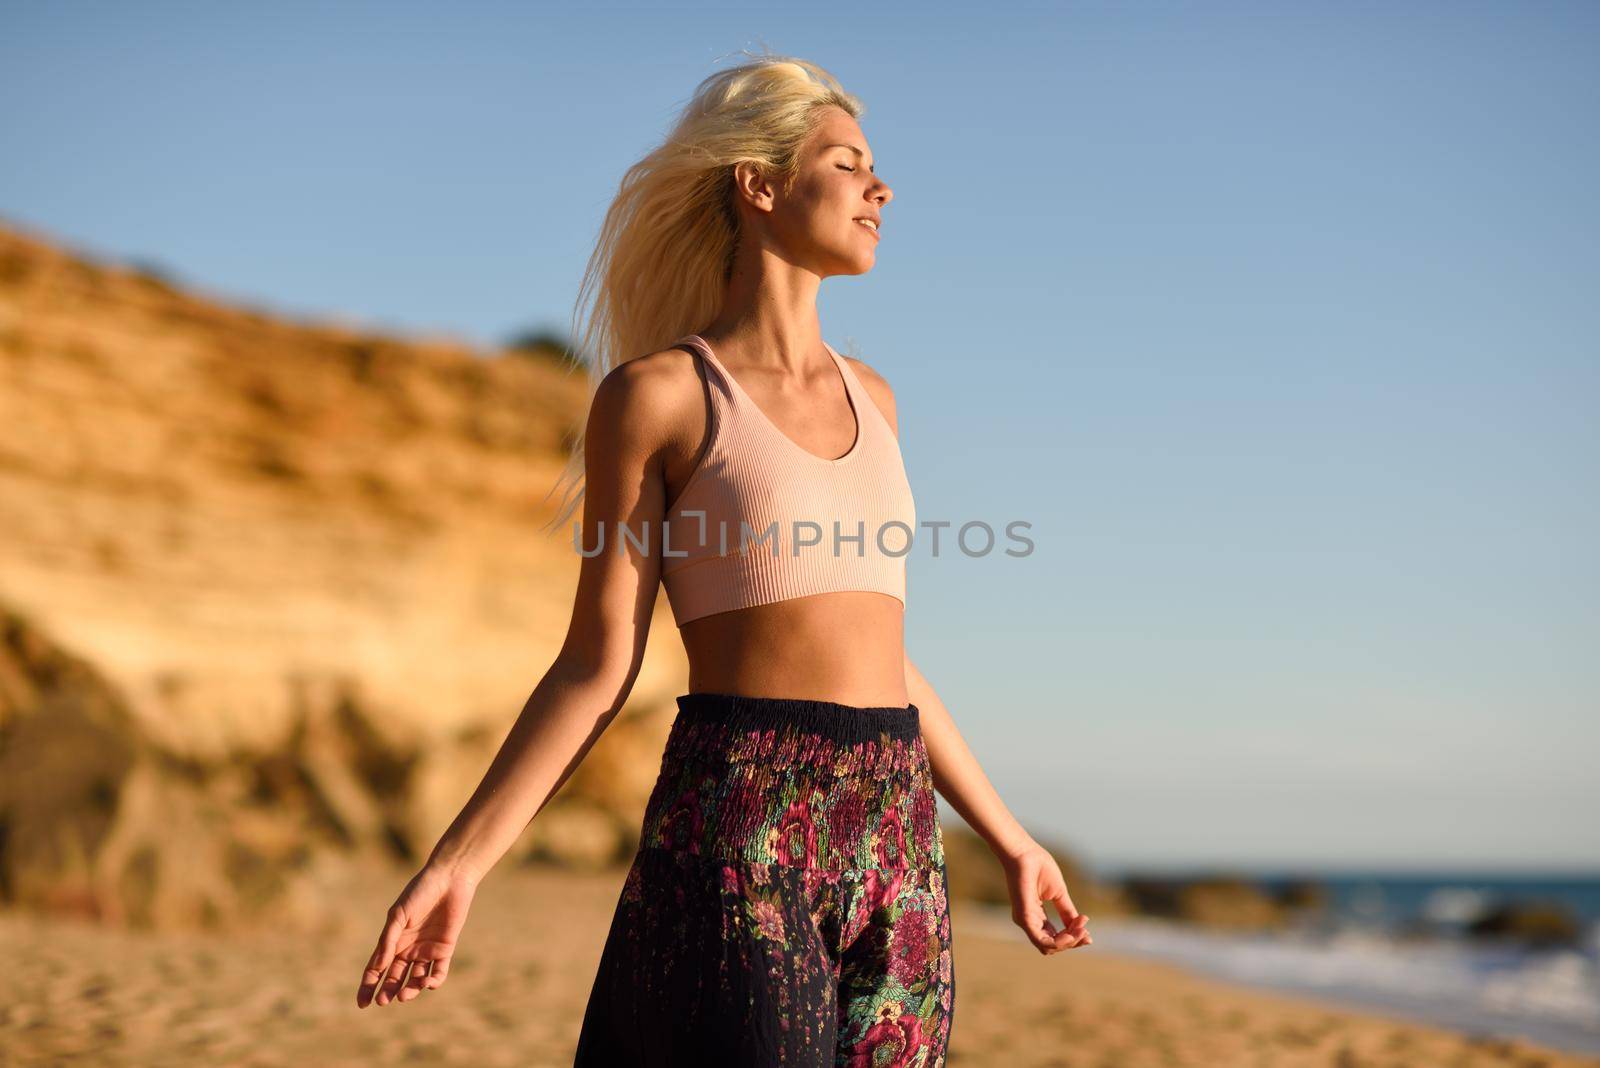 Woman enjoying the sunset on a beautiful beach by javiindy